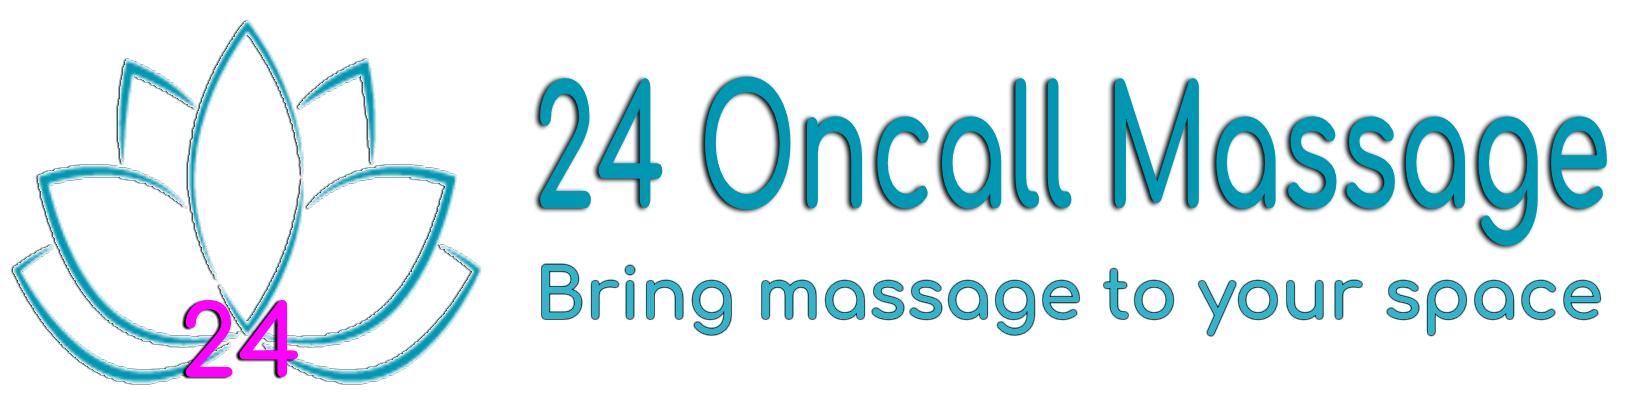 24 Hrs On-call Massage in Jimbaran, Uluwatu, Ungasan, Canggu, Kuta, Ubud